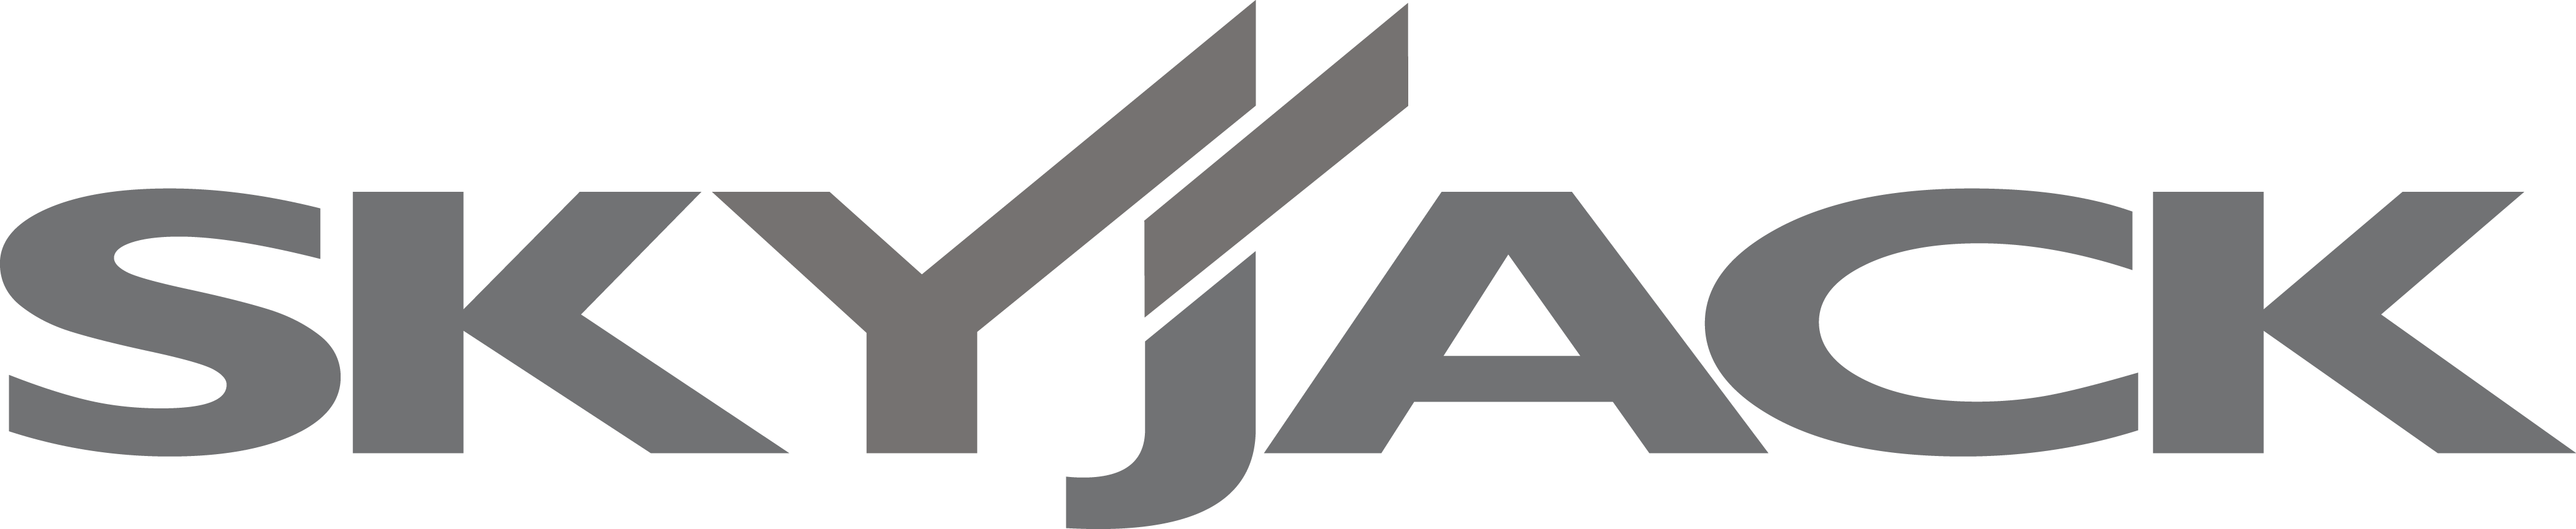 Skyjack logo